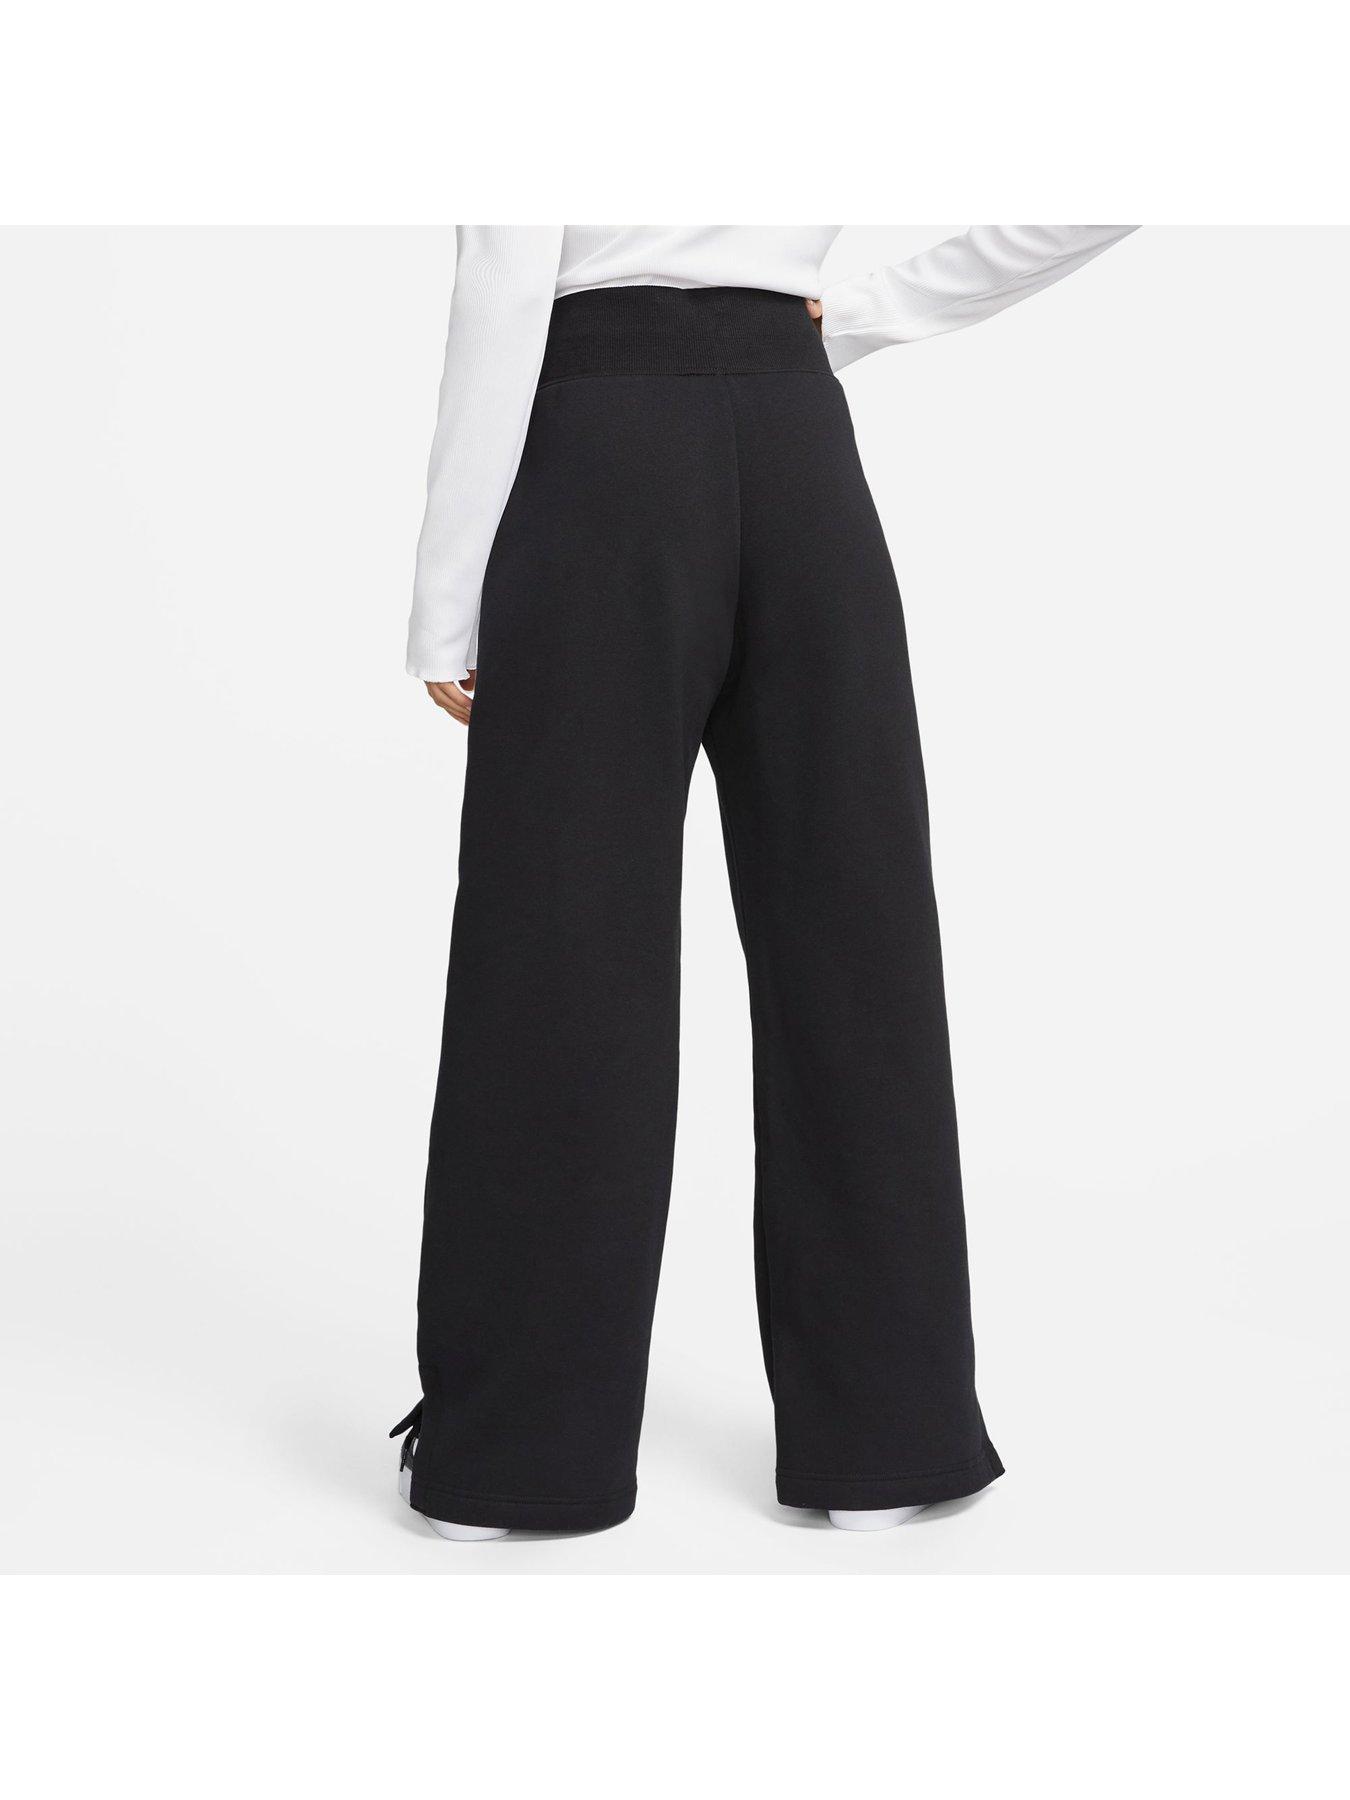 Strike Dri-FIT Women's Pants - Grey